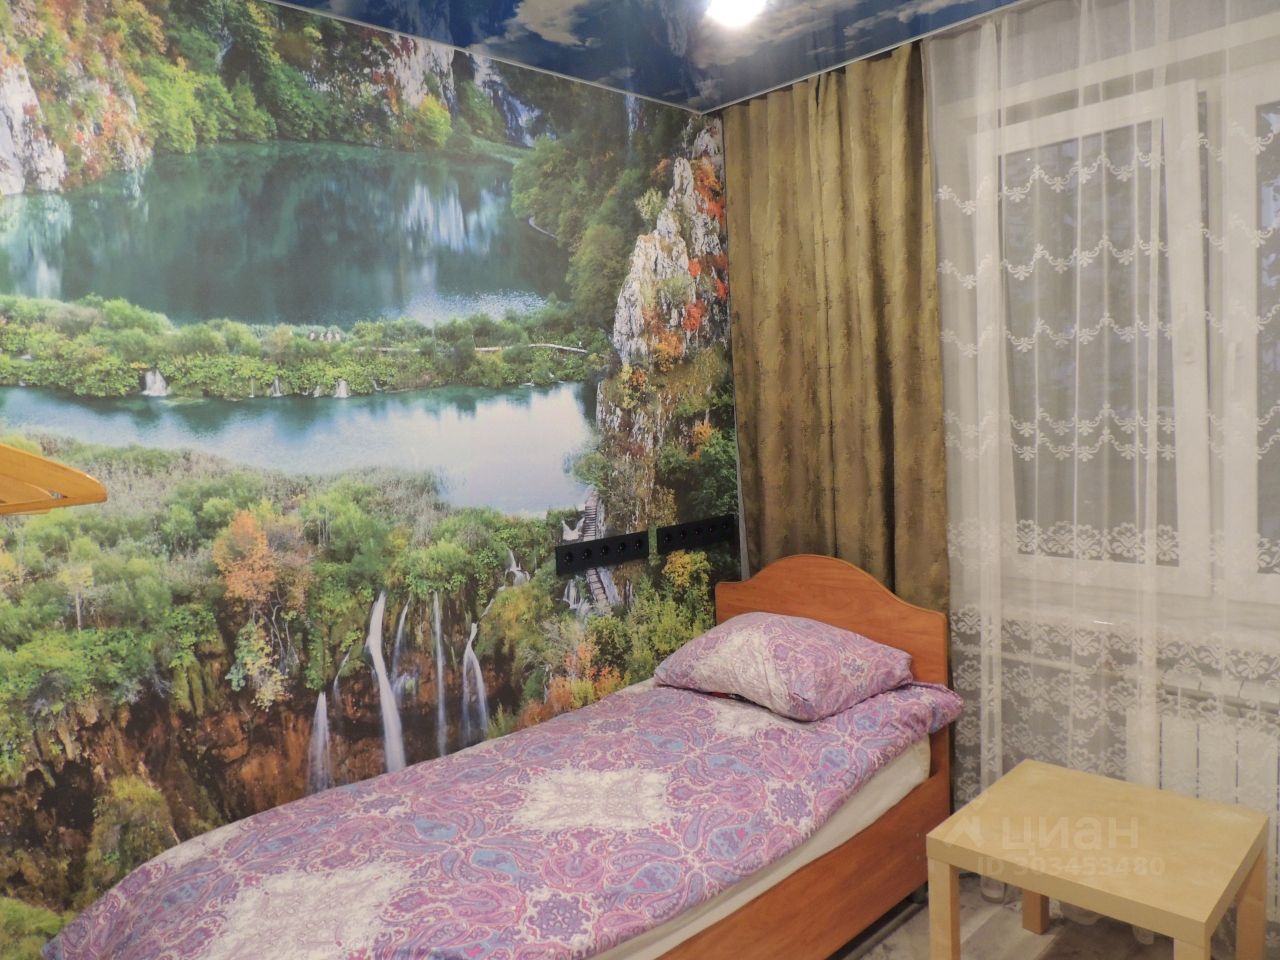 Уютная комната с живописными обоями, односпальная кровать, окно с занавесками, столик. Идеально для комфортного проживания в Екатеринбурге.